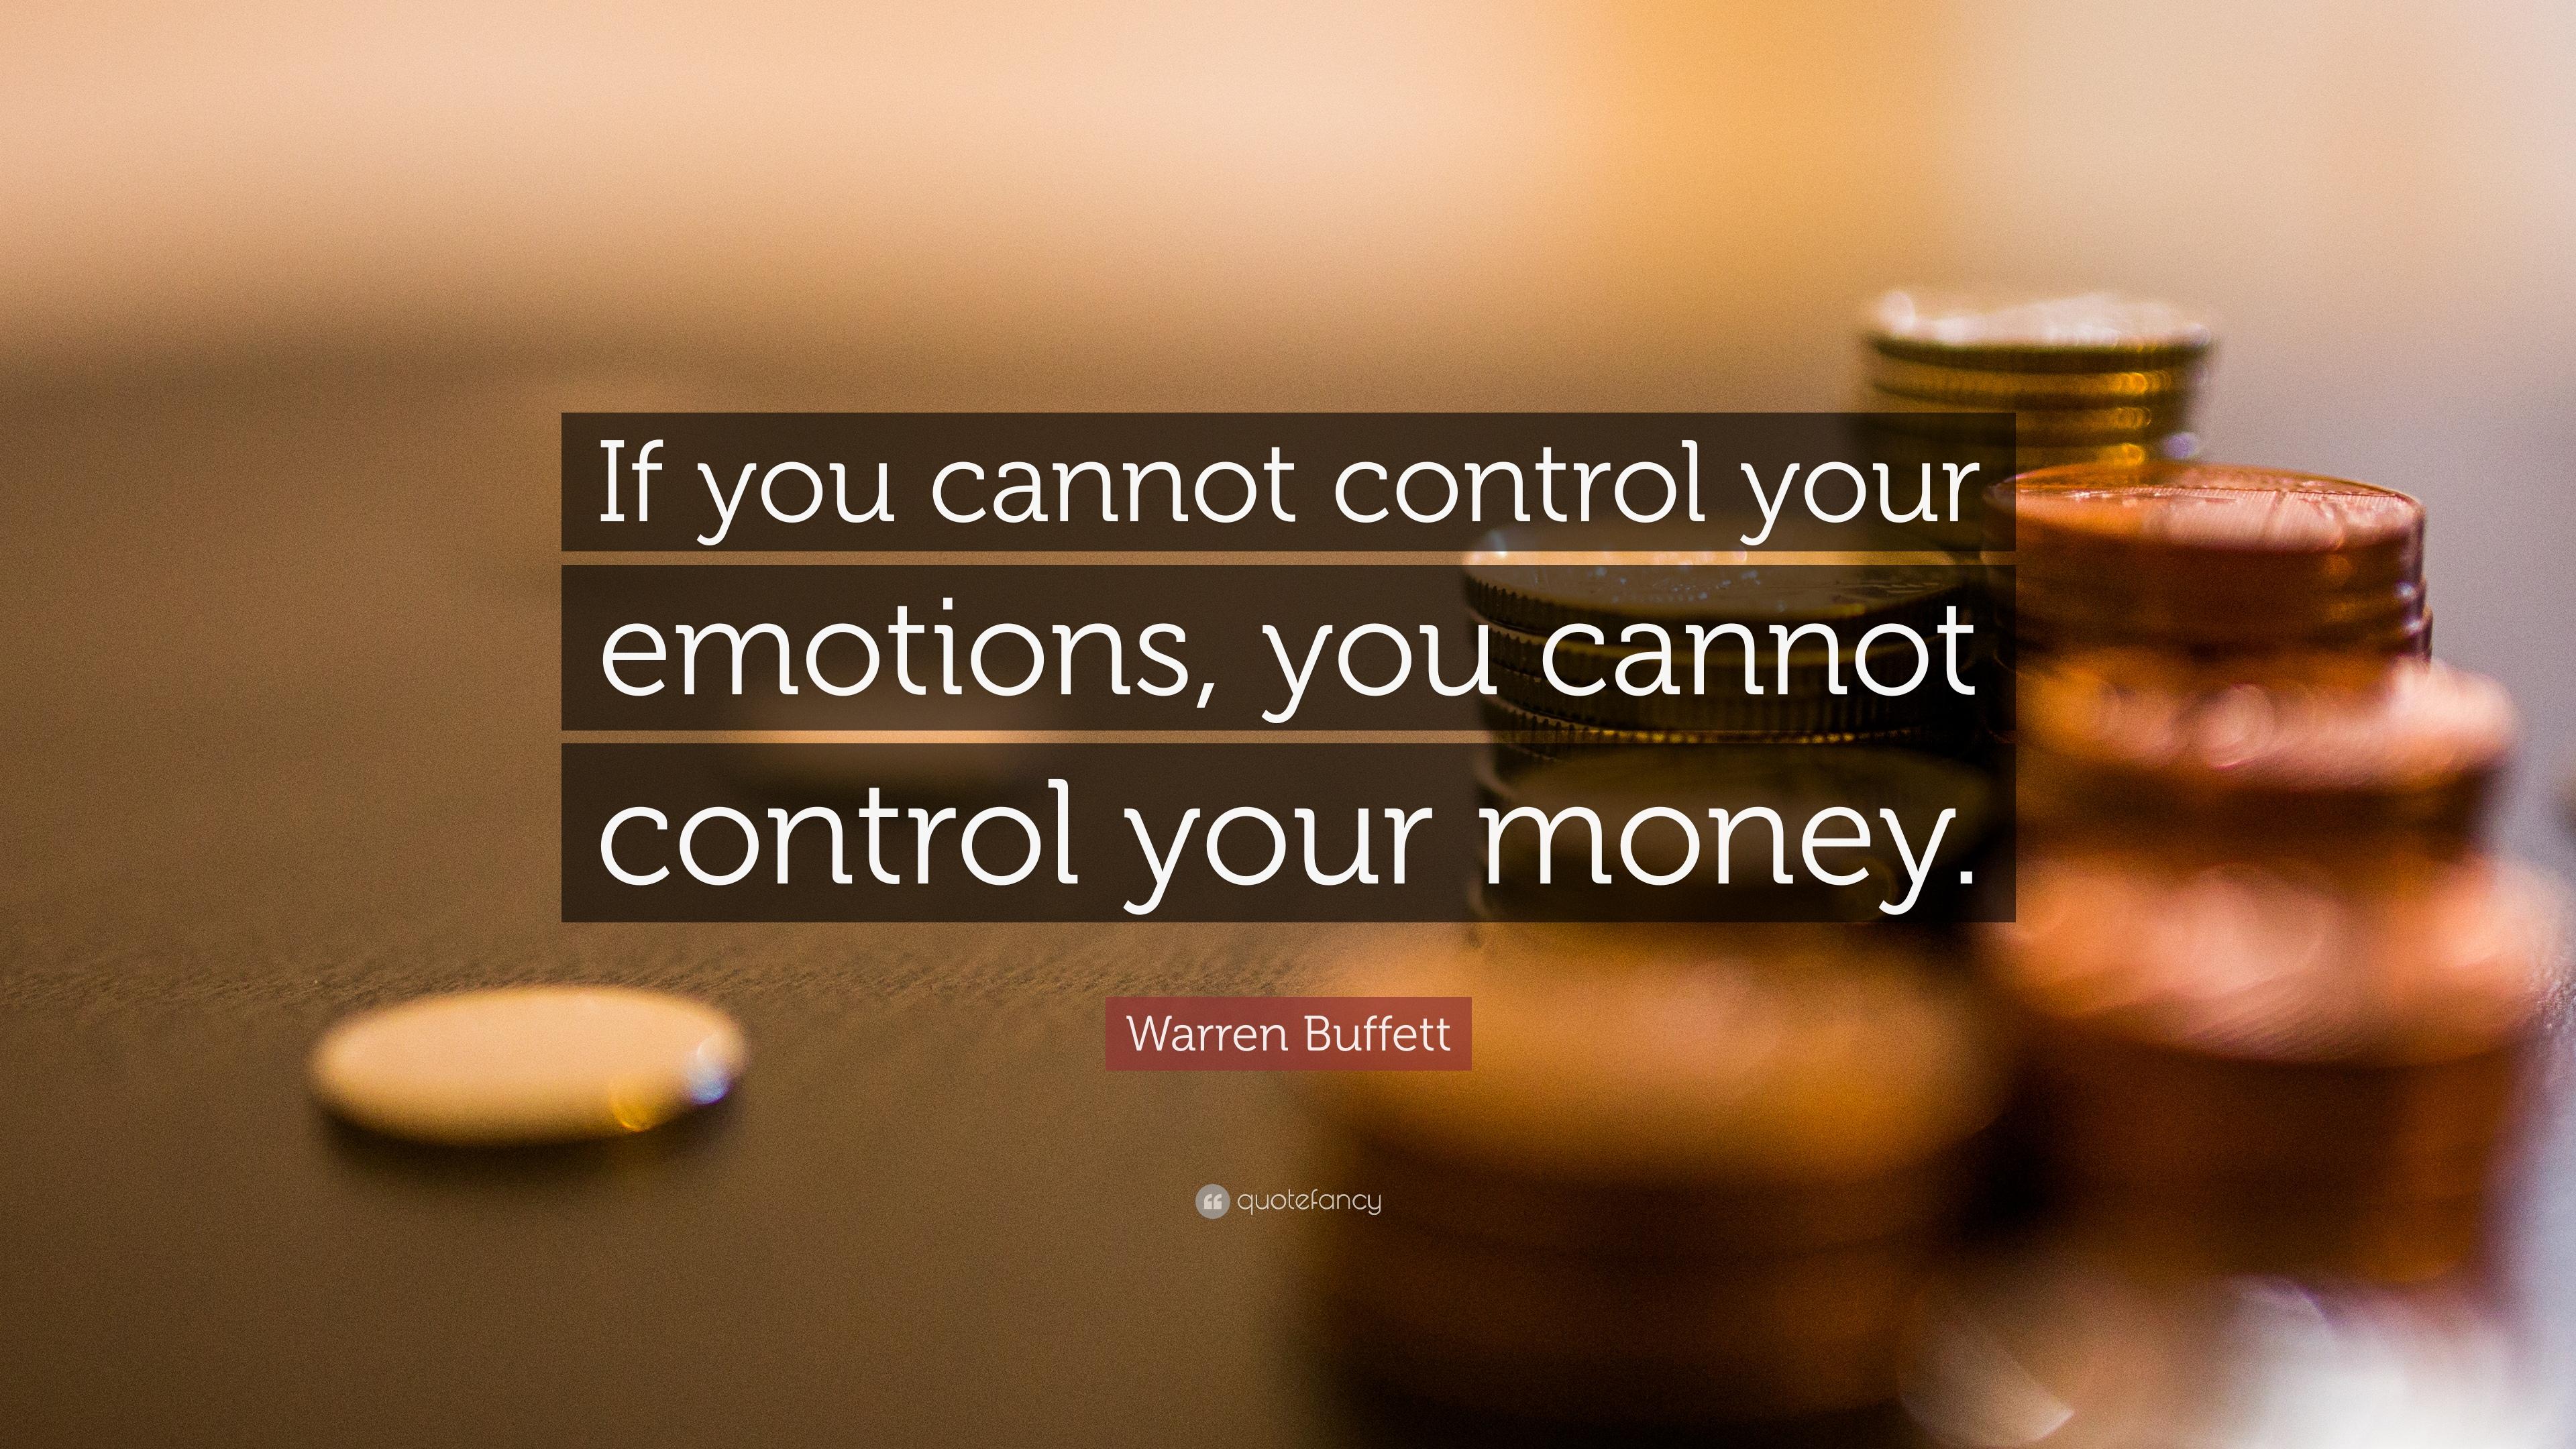 Warren Buffett Quote: “If you cannot control your emotions, you cannot control your money.” (19 wallpaper)